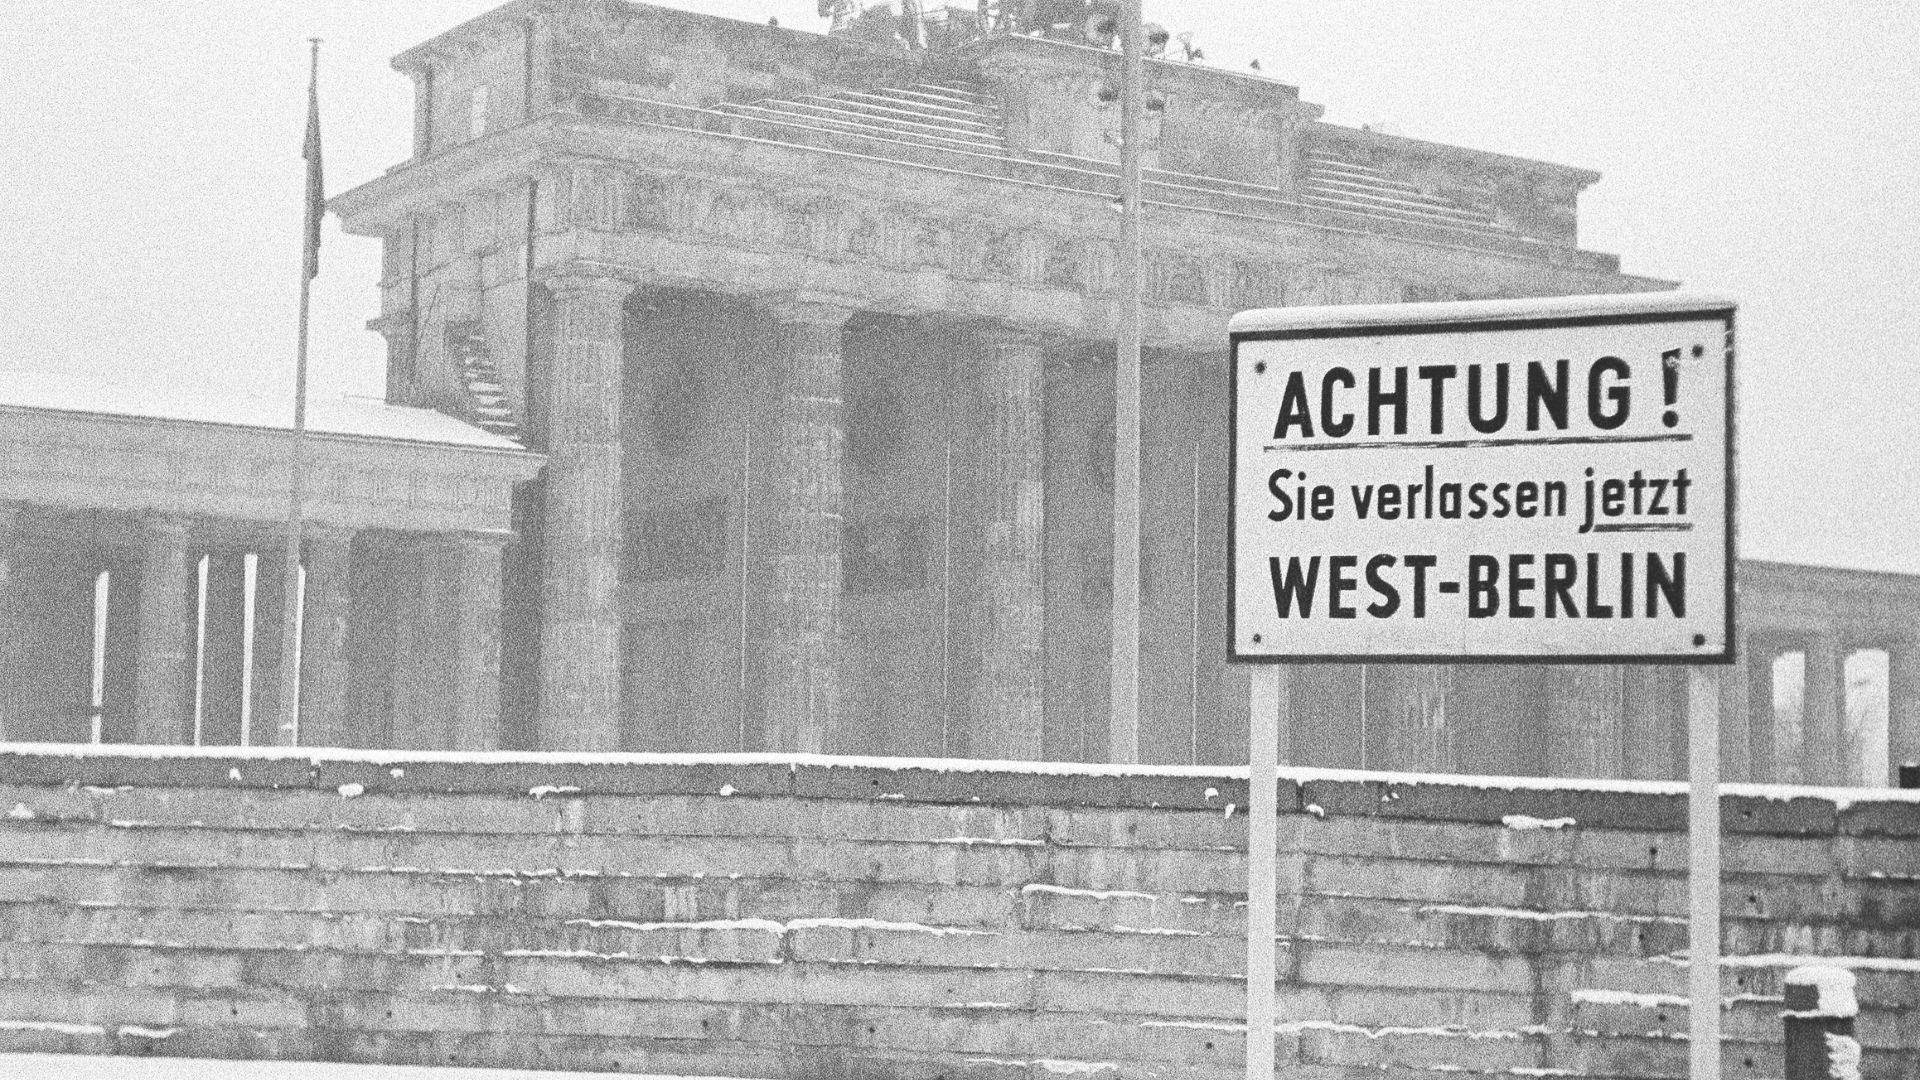 Sechziger Jahre, Schwarzweissfoto, Berliner Mauer in Berlin, Brandenburger Tor, Dezember 1968, Warnschild "Achtung Sie verlassen jetzt West-Berlin".